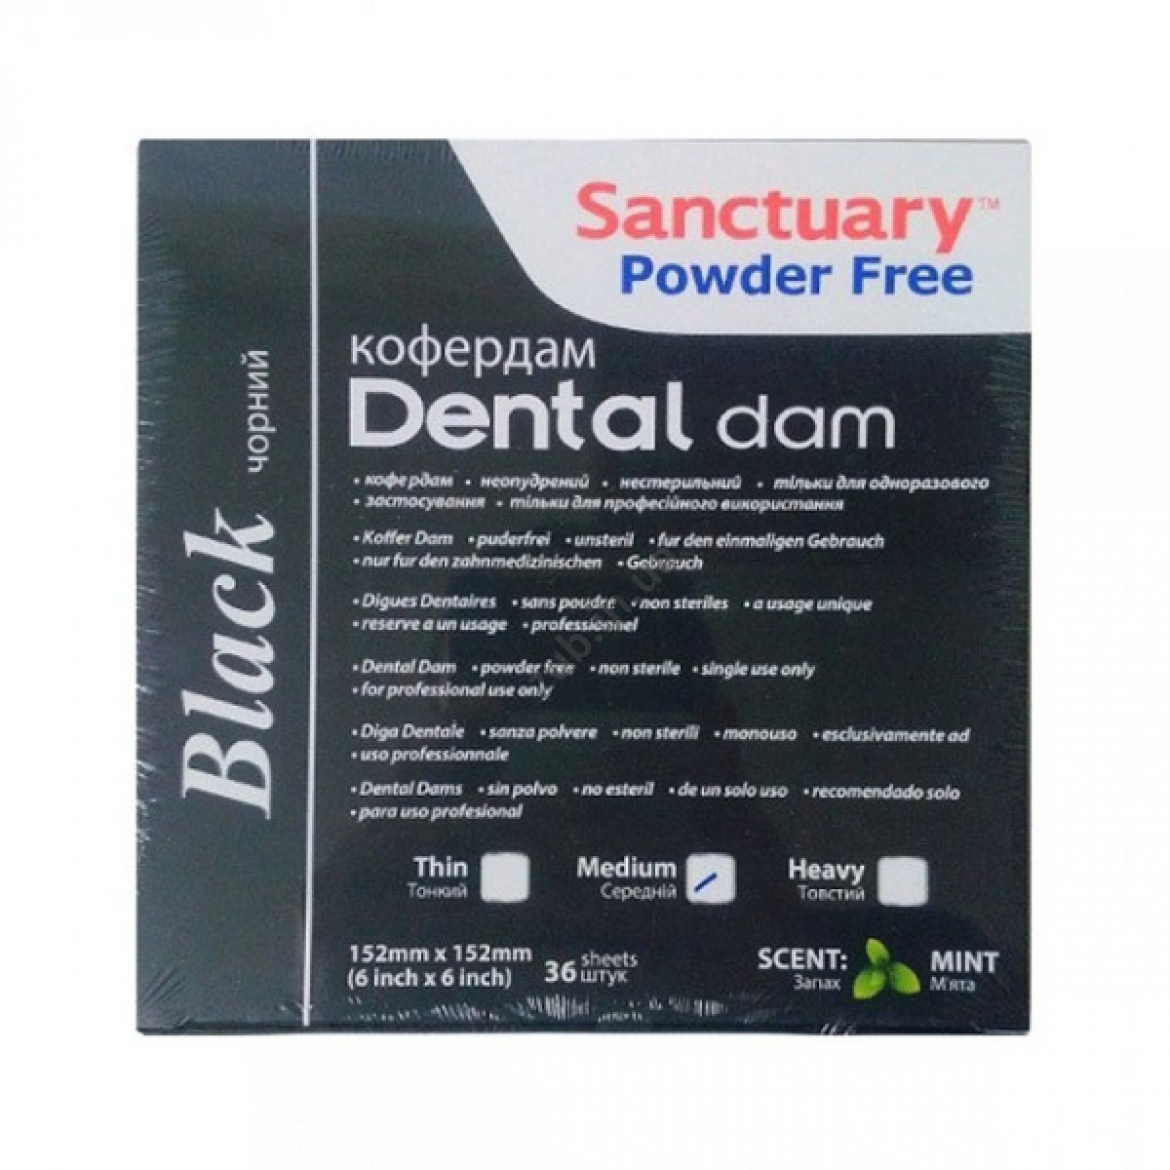 Sanctuary Black Latex Dental dam, листы для коффердама (средние, 152мм*152мм) латексные черные, 36 шт.